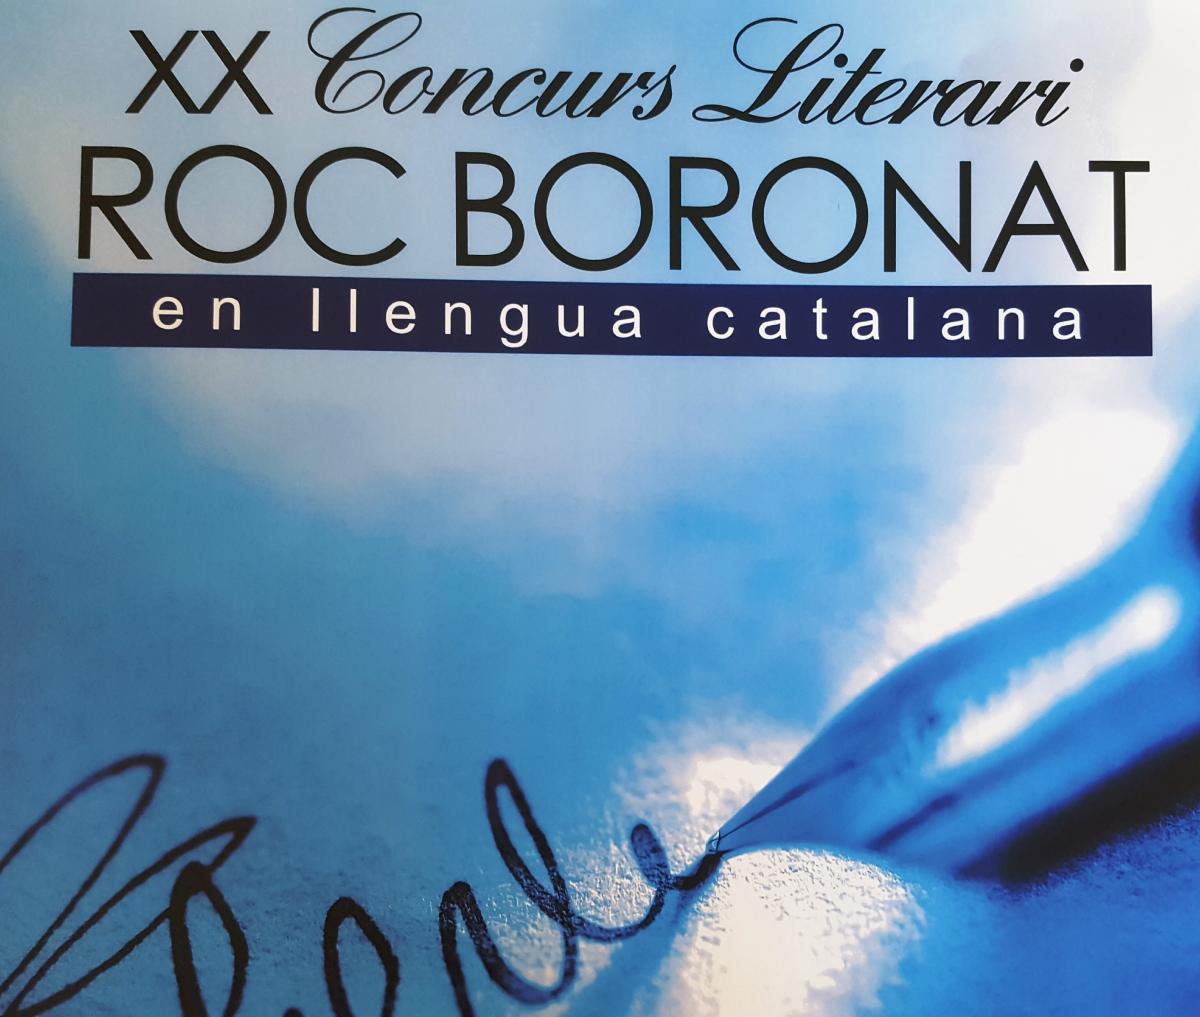 Cartell, en blau, de la 20ena edició del premi Roc Boronat.